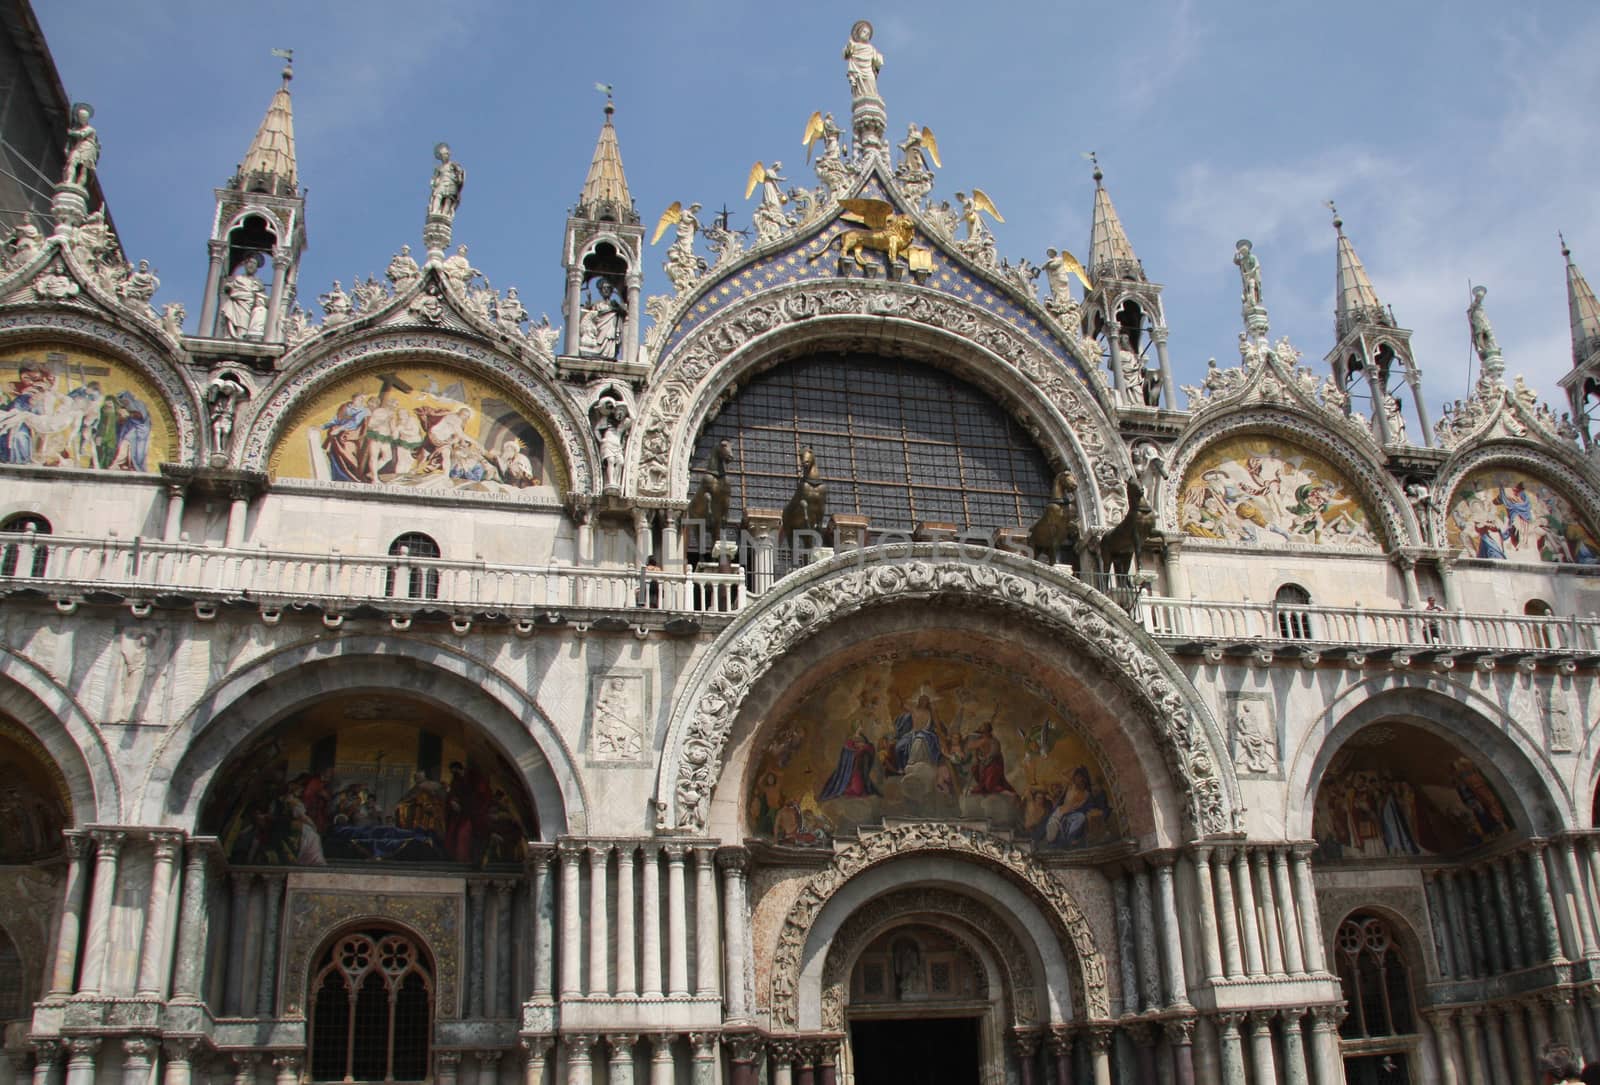 Saint Mark's Basilica facade in Venice, Italy